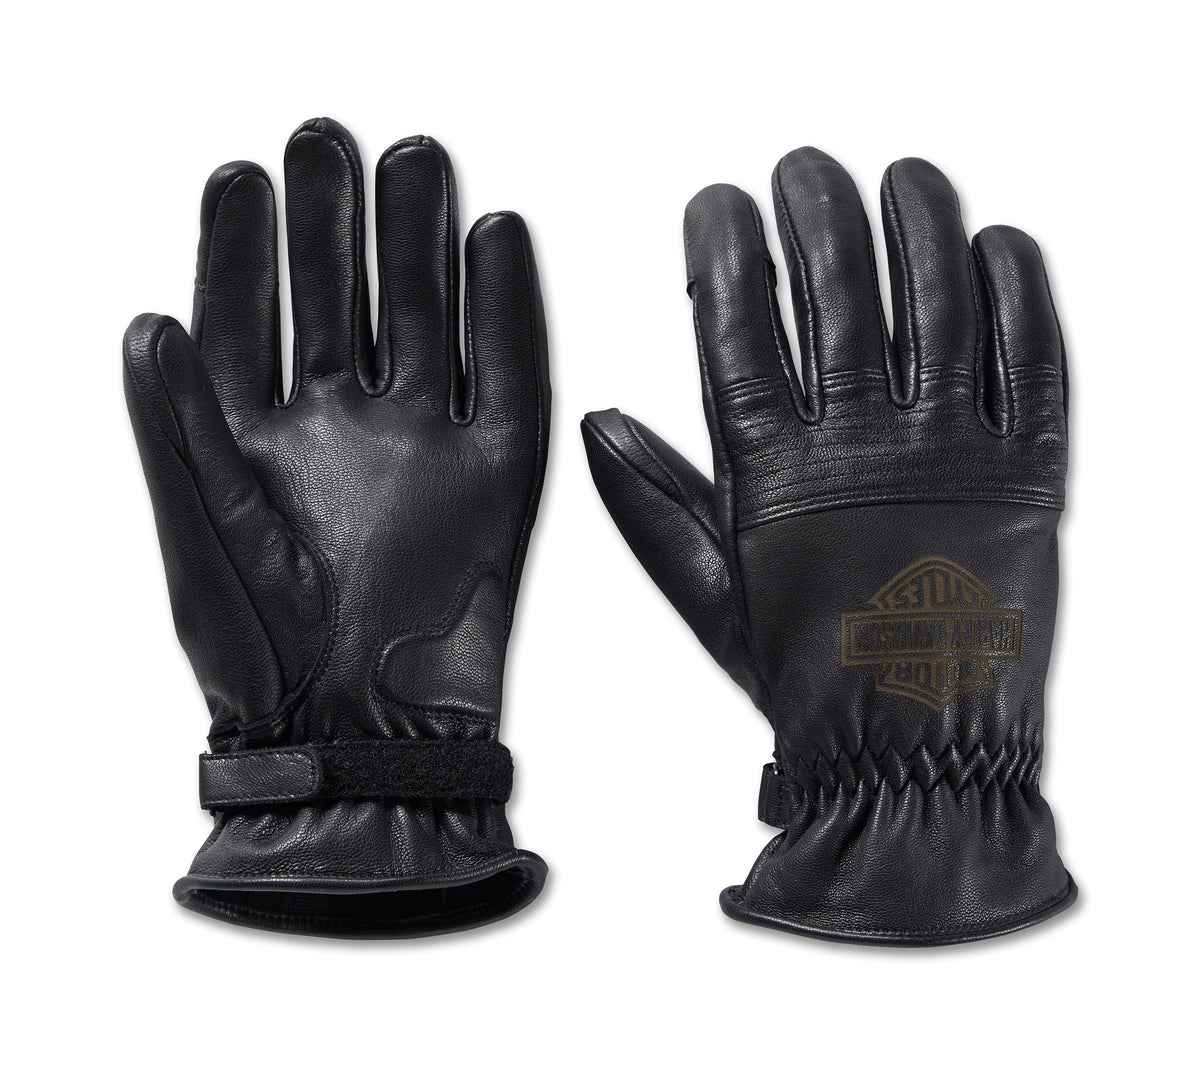 Harley-Davidson Men's Helm Leather Work Gloves - Black